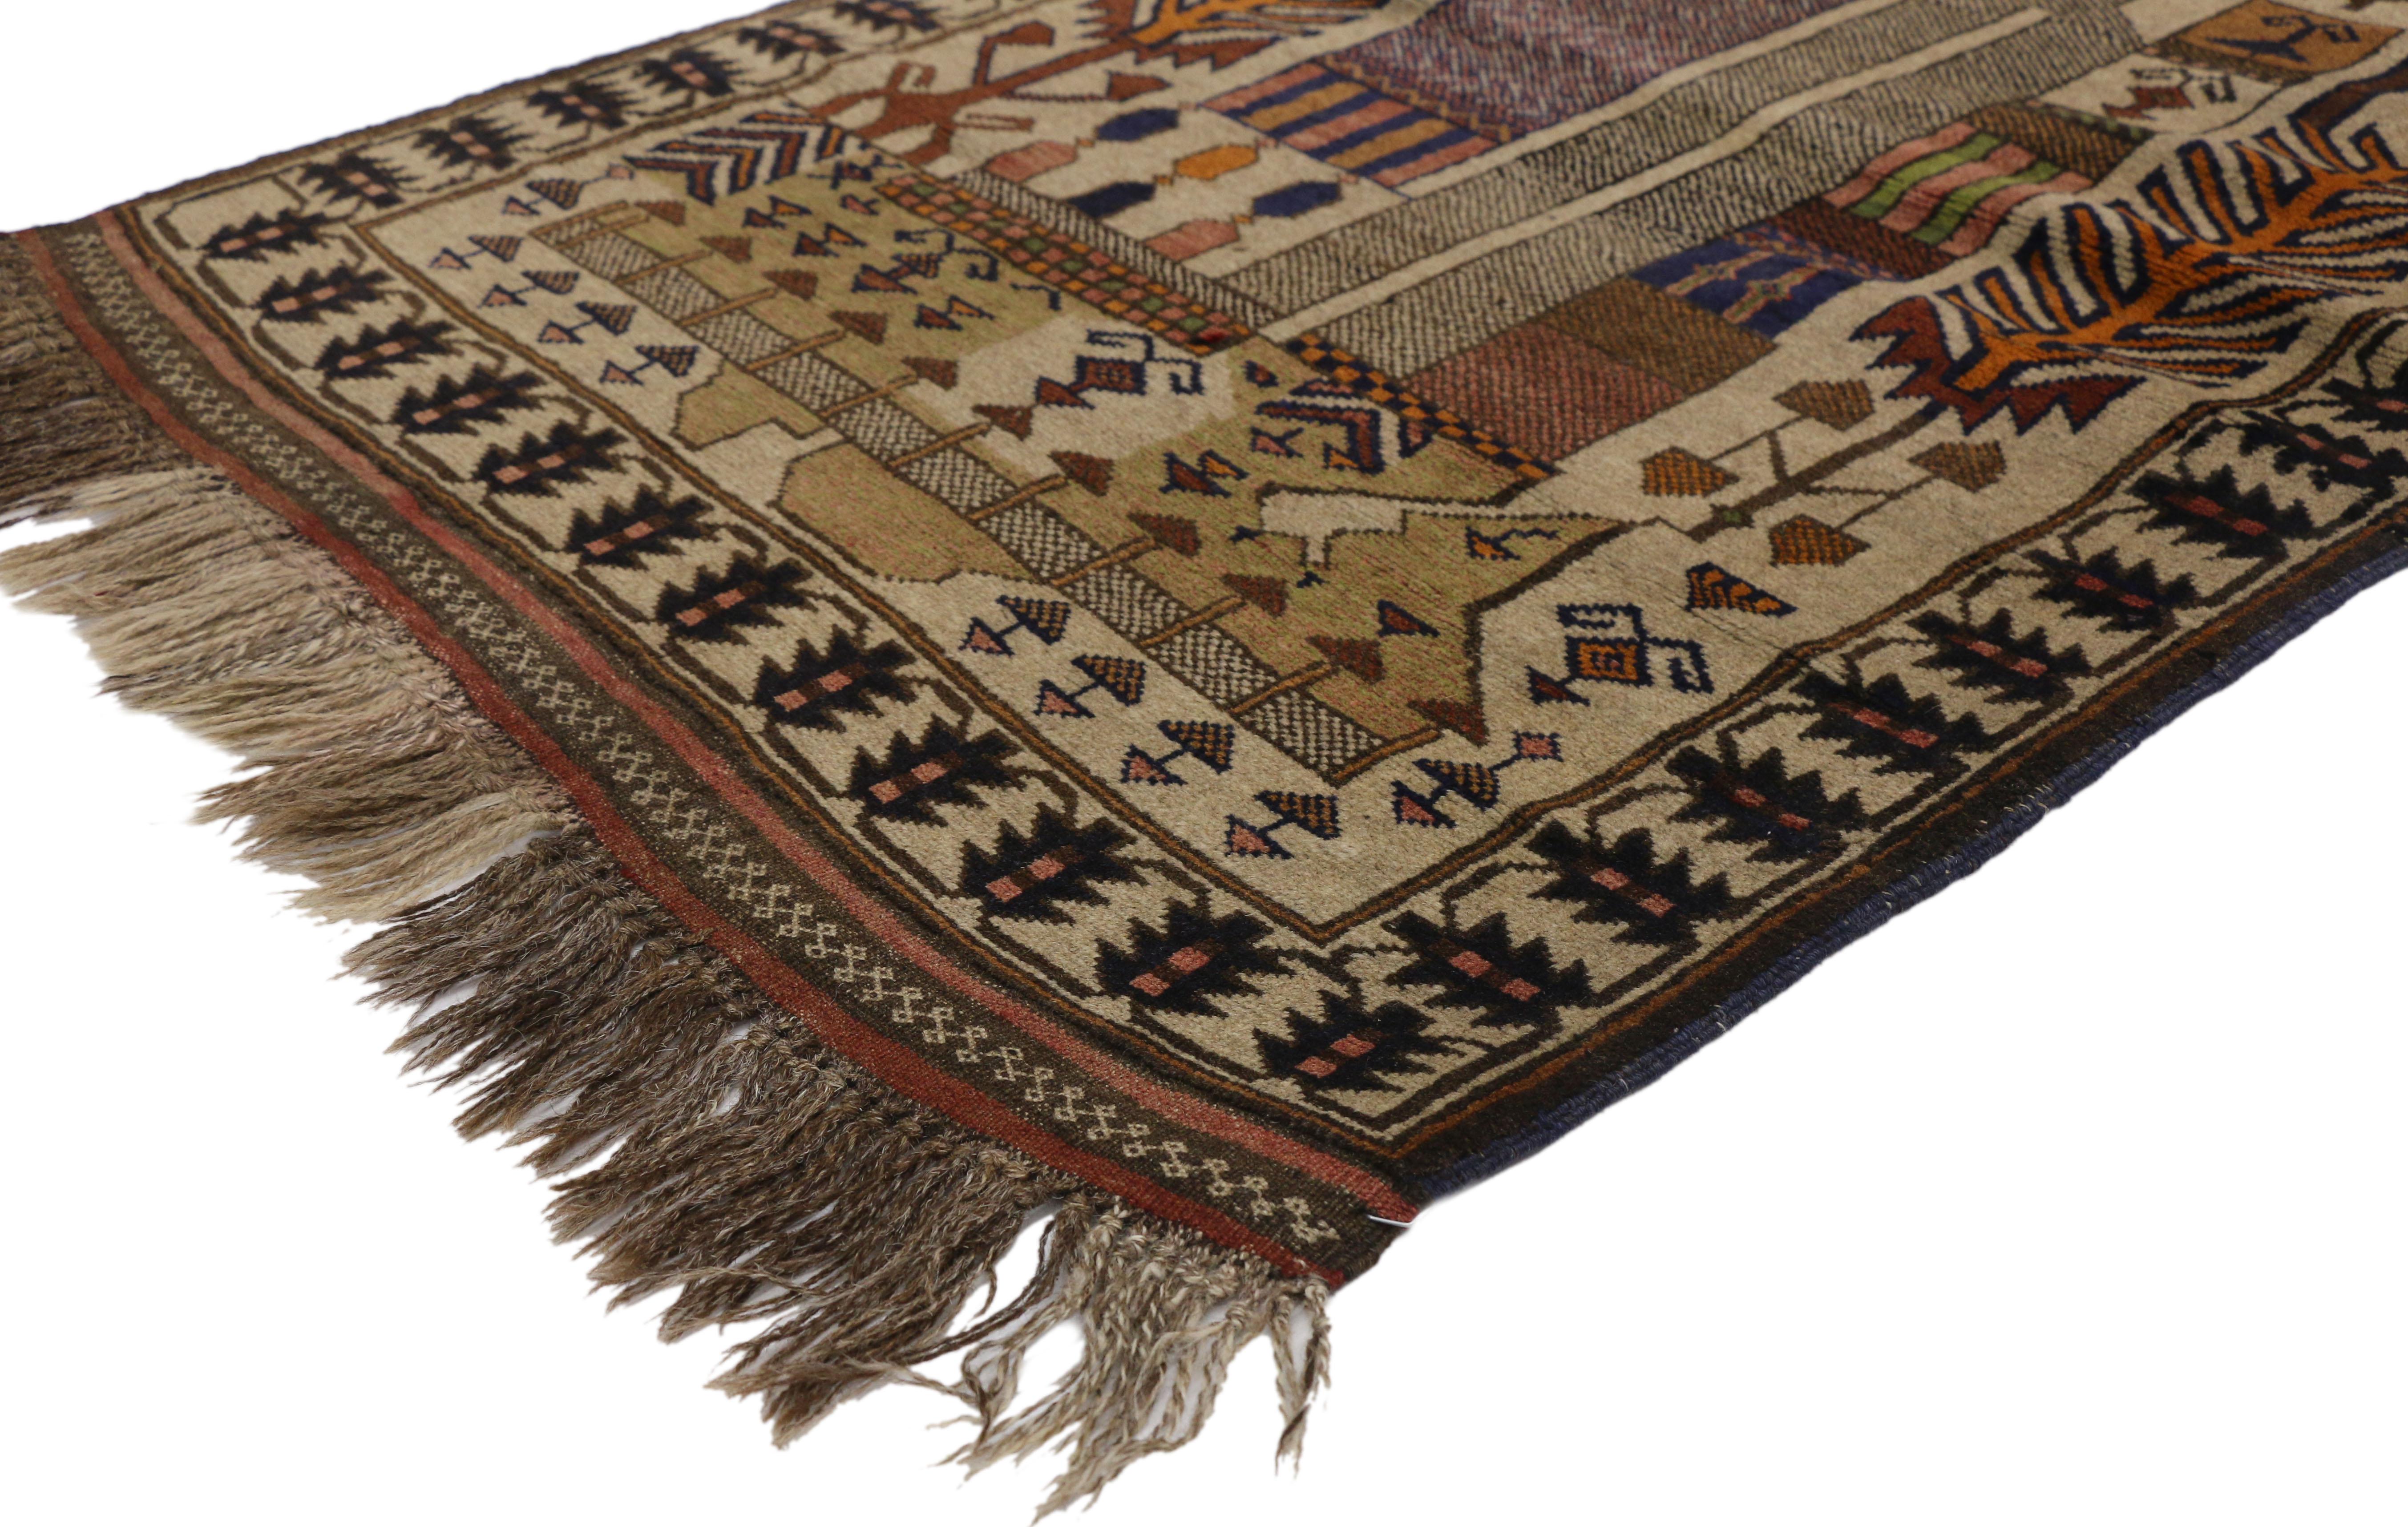 74665, tapis de guerre afghan Balouch vintage de style tribal nomade. Ce tapis de guerre Balouch afghan vintage en laine nouée à la main représente probablement une scène du Minaret de Lande entourée de motifs géométriques représentant peut-être des